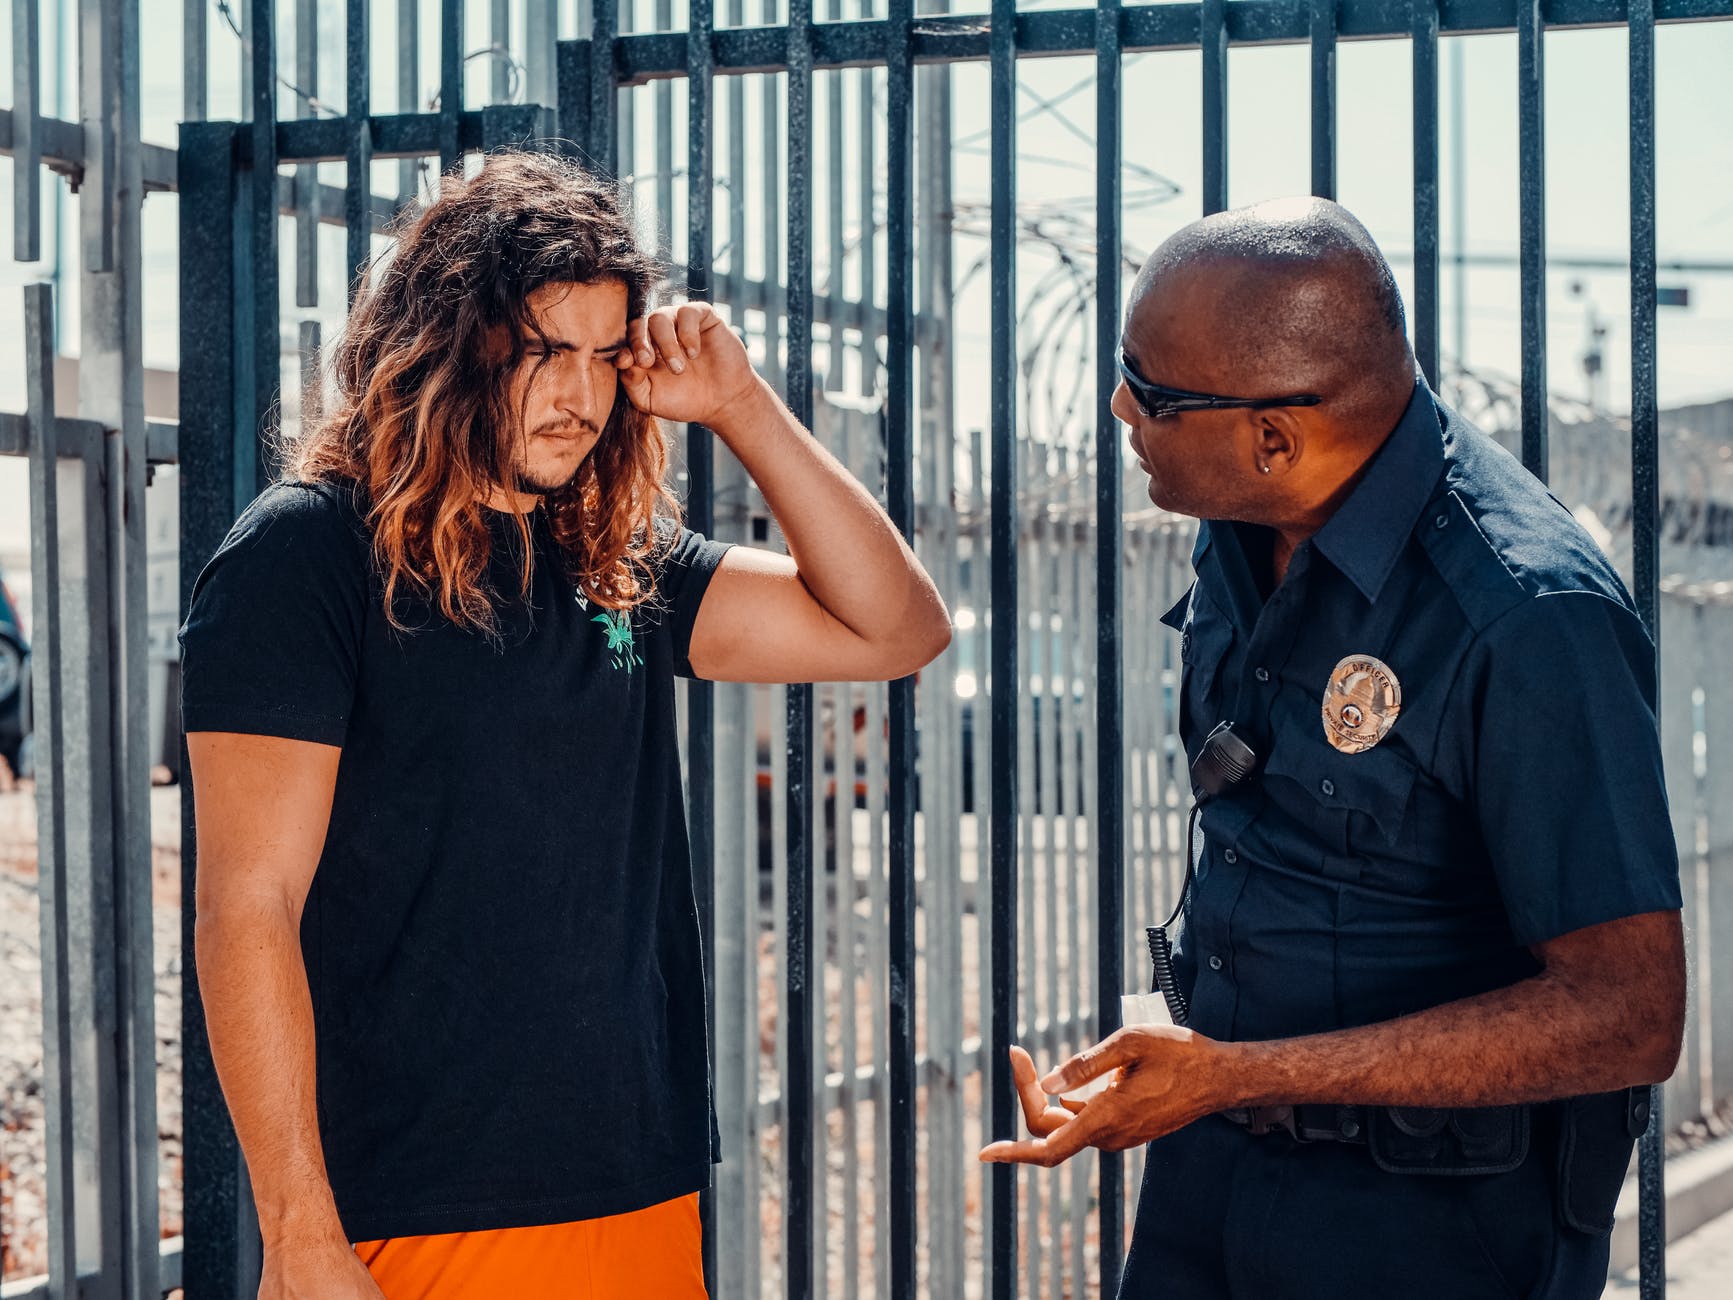 Un hombre con rostro afligido conversando con un oficial de policía. | Foto: Pexels